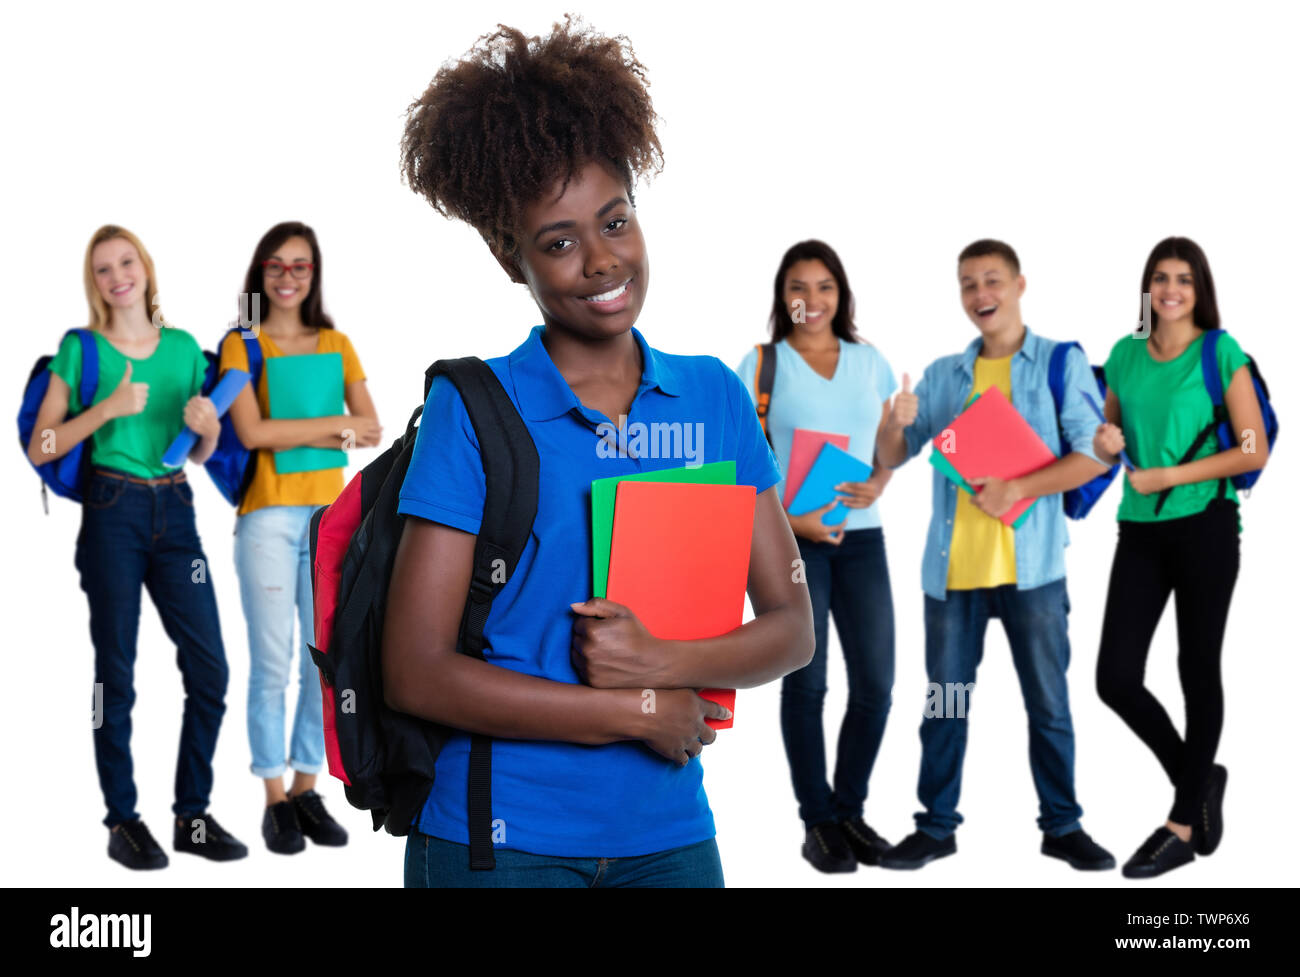 African American female student avec groupe d'étudiants sur un fond blanc pour découper Banque D'Images